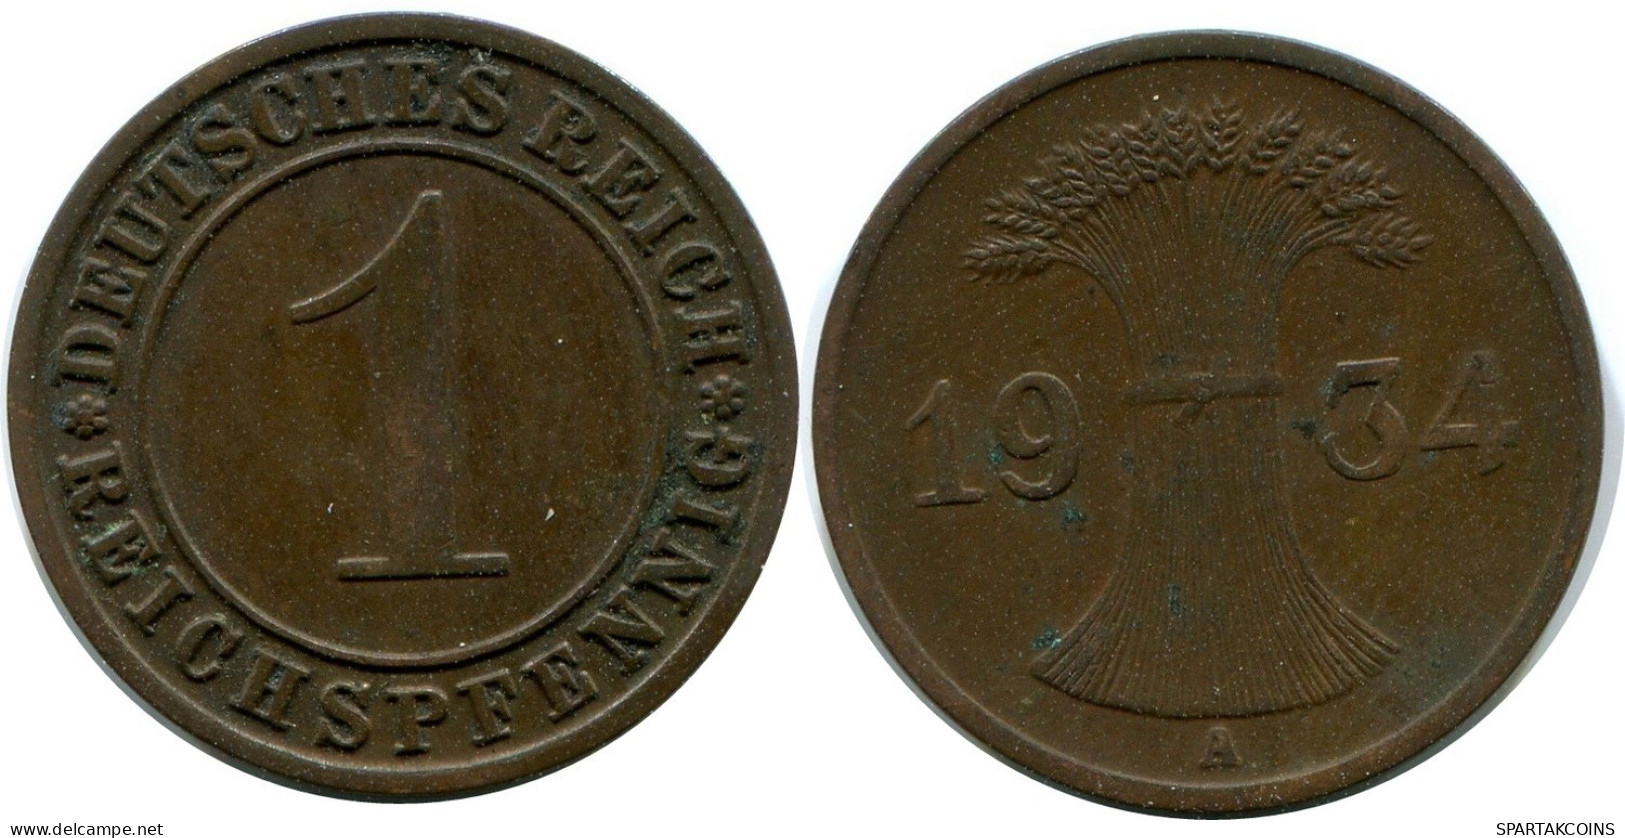 1 REICHSPFENNIG 1934 A DEUTSCHLAND Münze GERMANY #DA777.D.A - 1 Reichspfennig